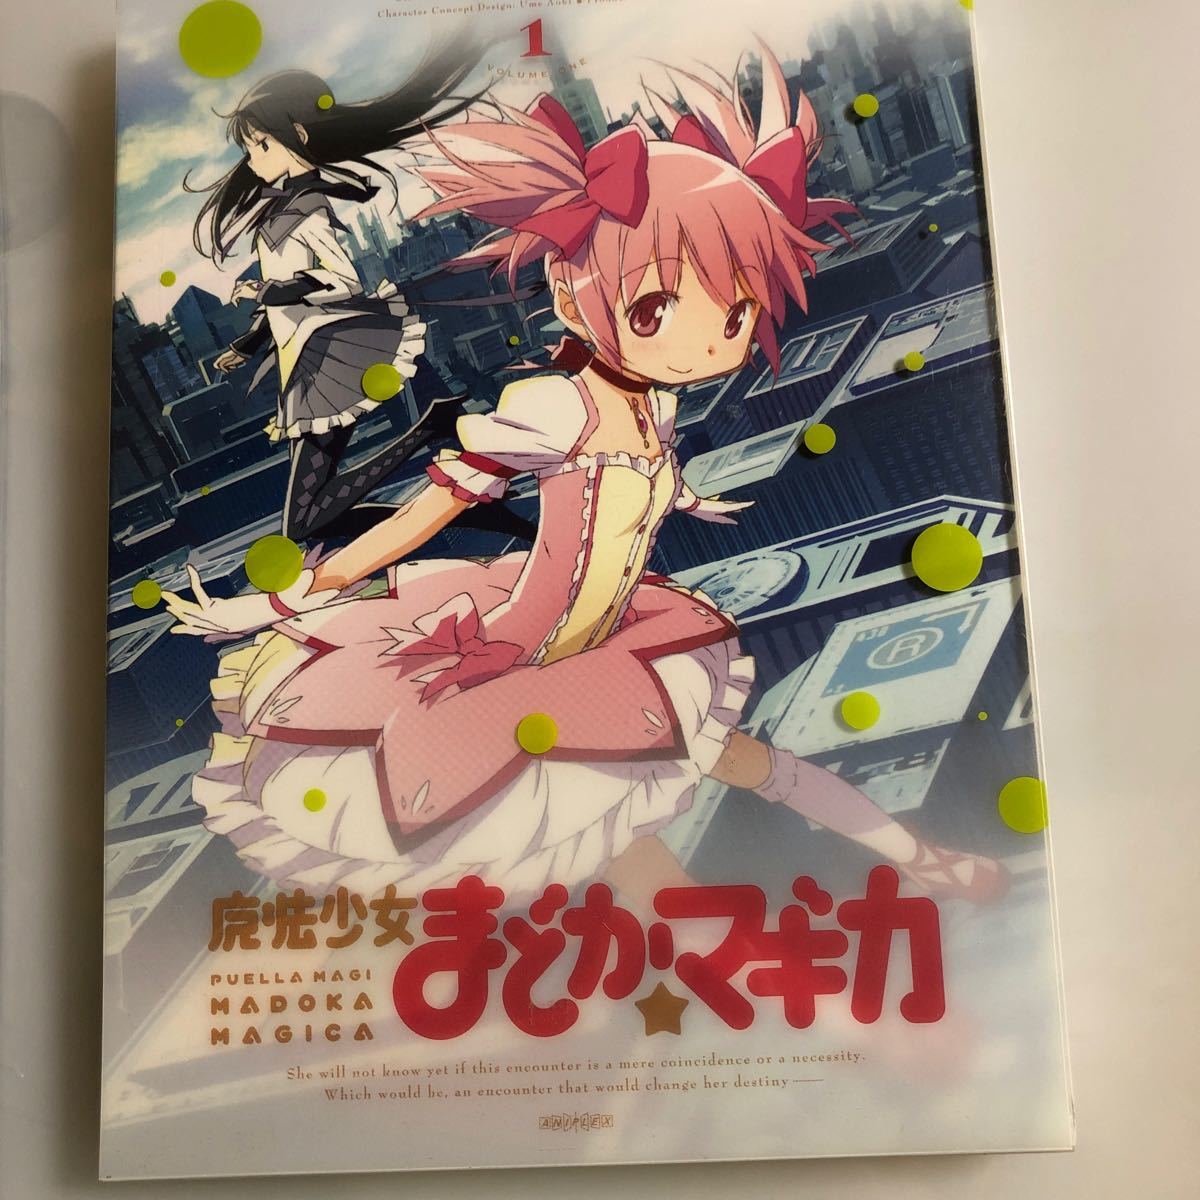 魔法少女まどか☆マギカ 1 【完全生産限定版】 [Blu-ray] 未修正版